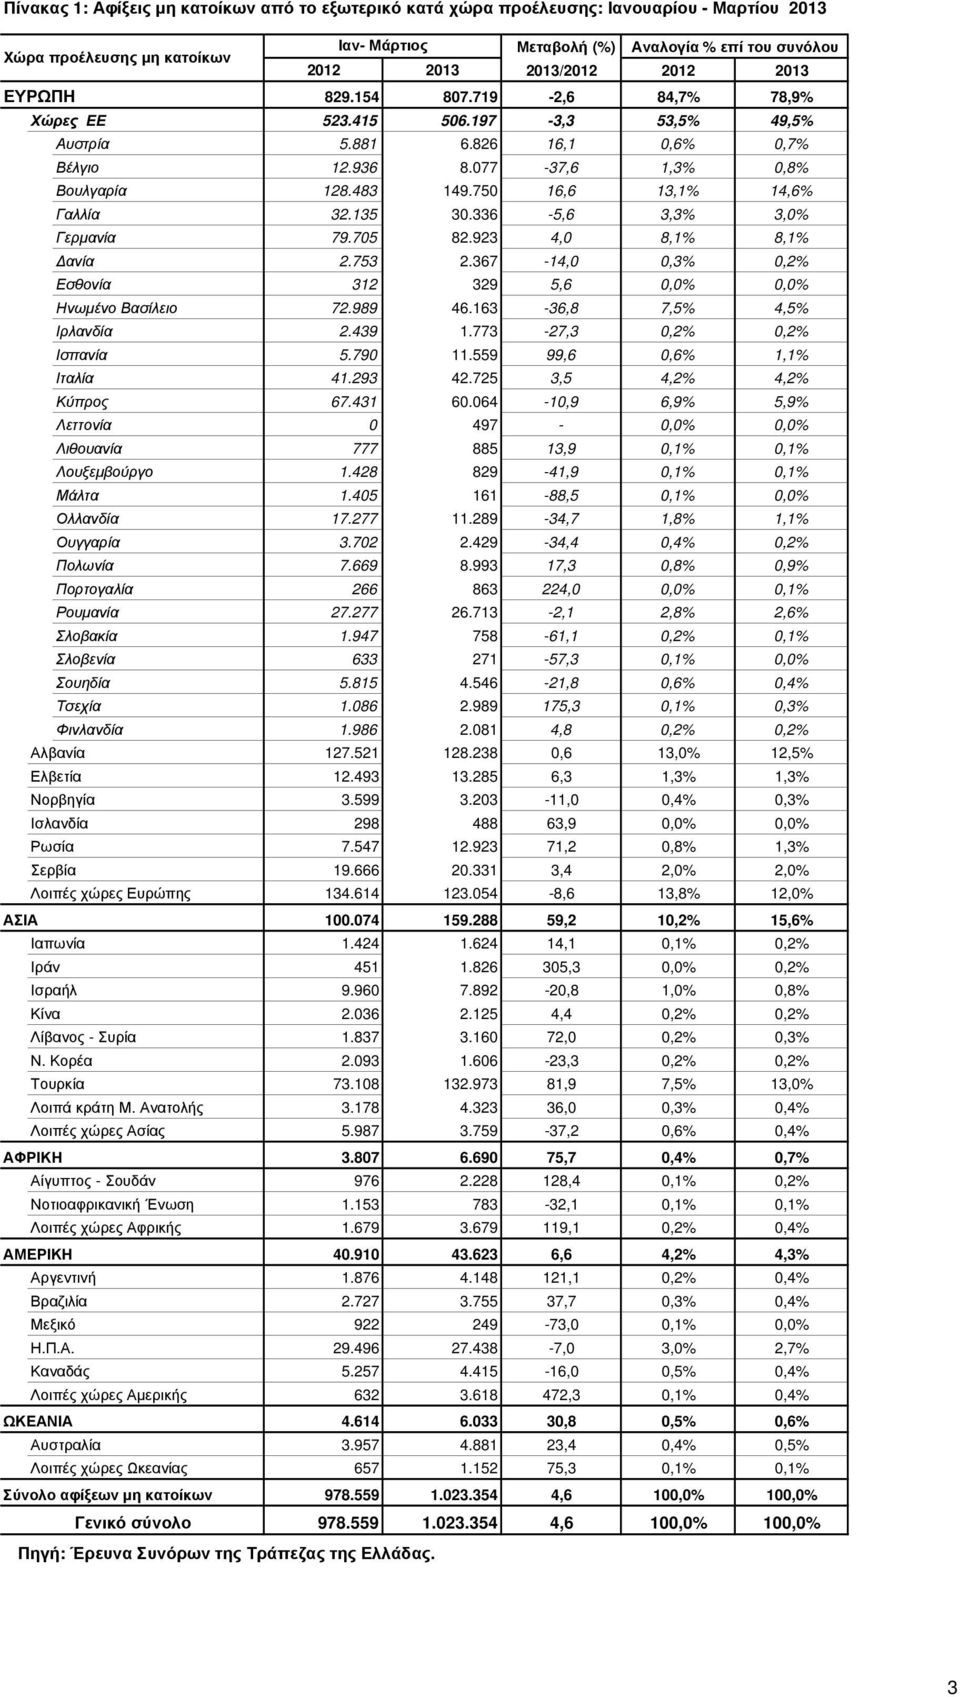 750 16,6 13,1% 14,6% Γαλλία 32.135 30.336-5,6 3,3% 3,0% Γερµανία 79.705 82.923 4,0 8,1% 8,1% ανία 2.753 2.367-14,0 0,3% 0,2% Εσθονία 312 329 5,6 0,0% 0,0% Ηνωµένο Βασίλειο 72.989 46.